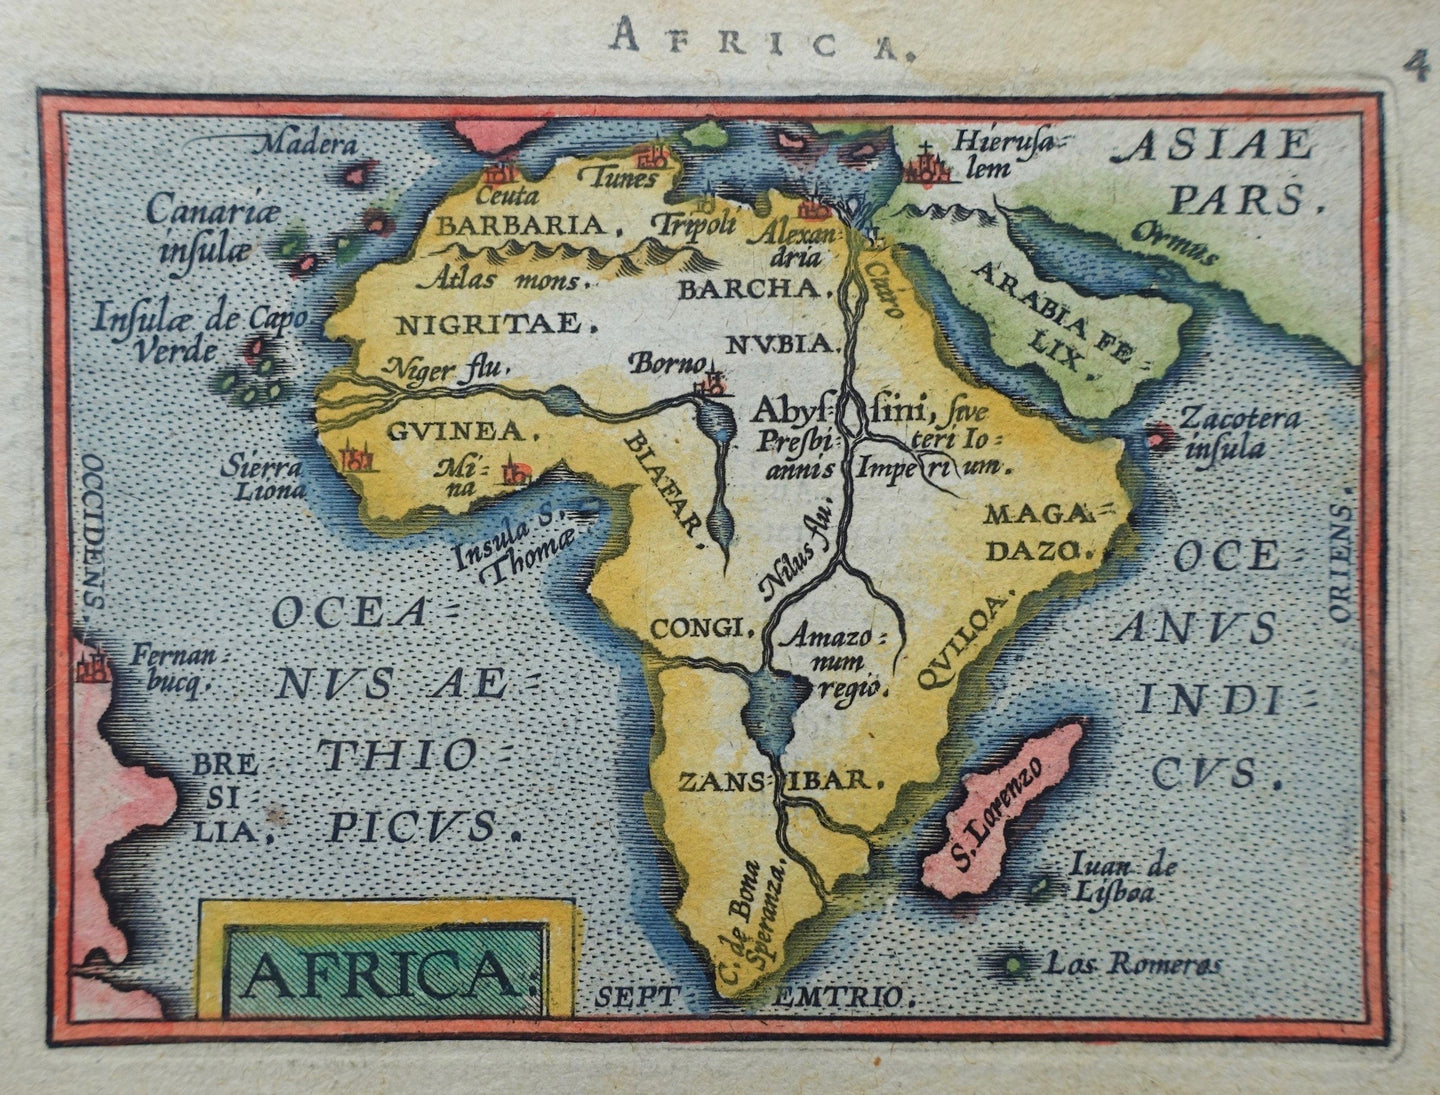 Afrika Africa - Abraham Ortelius Johann Baptist Vrients - 1601